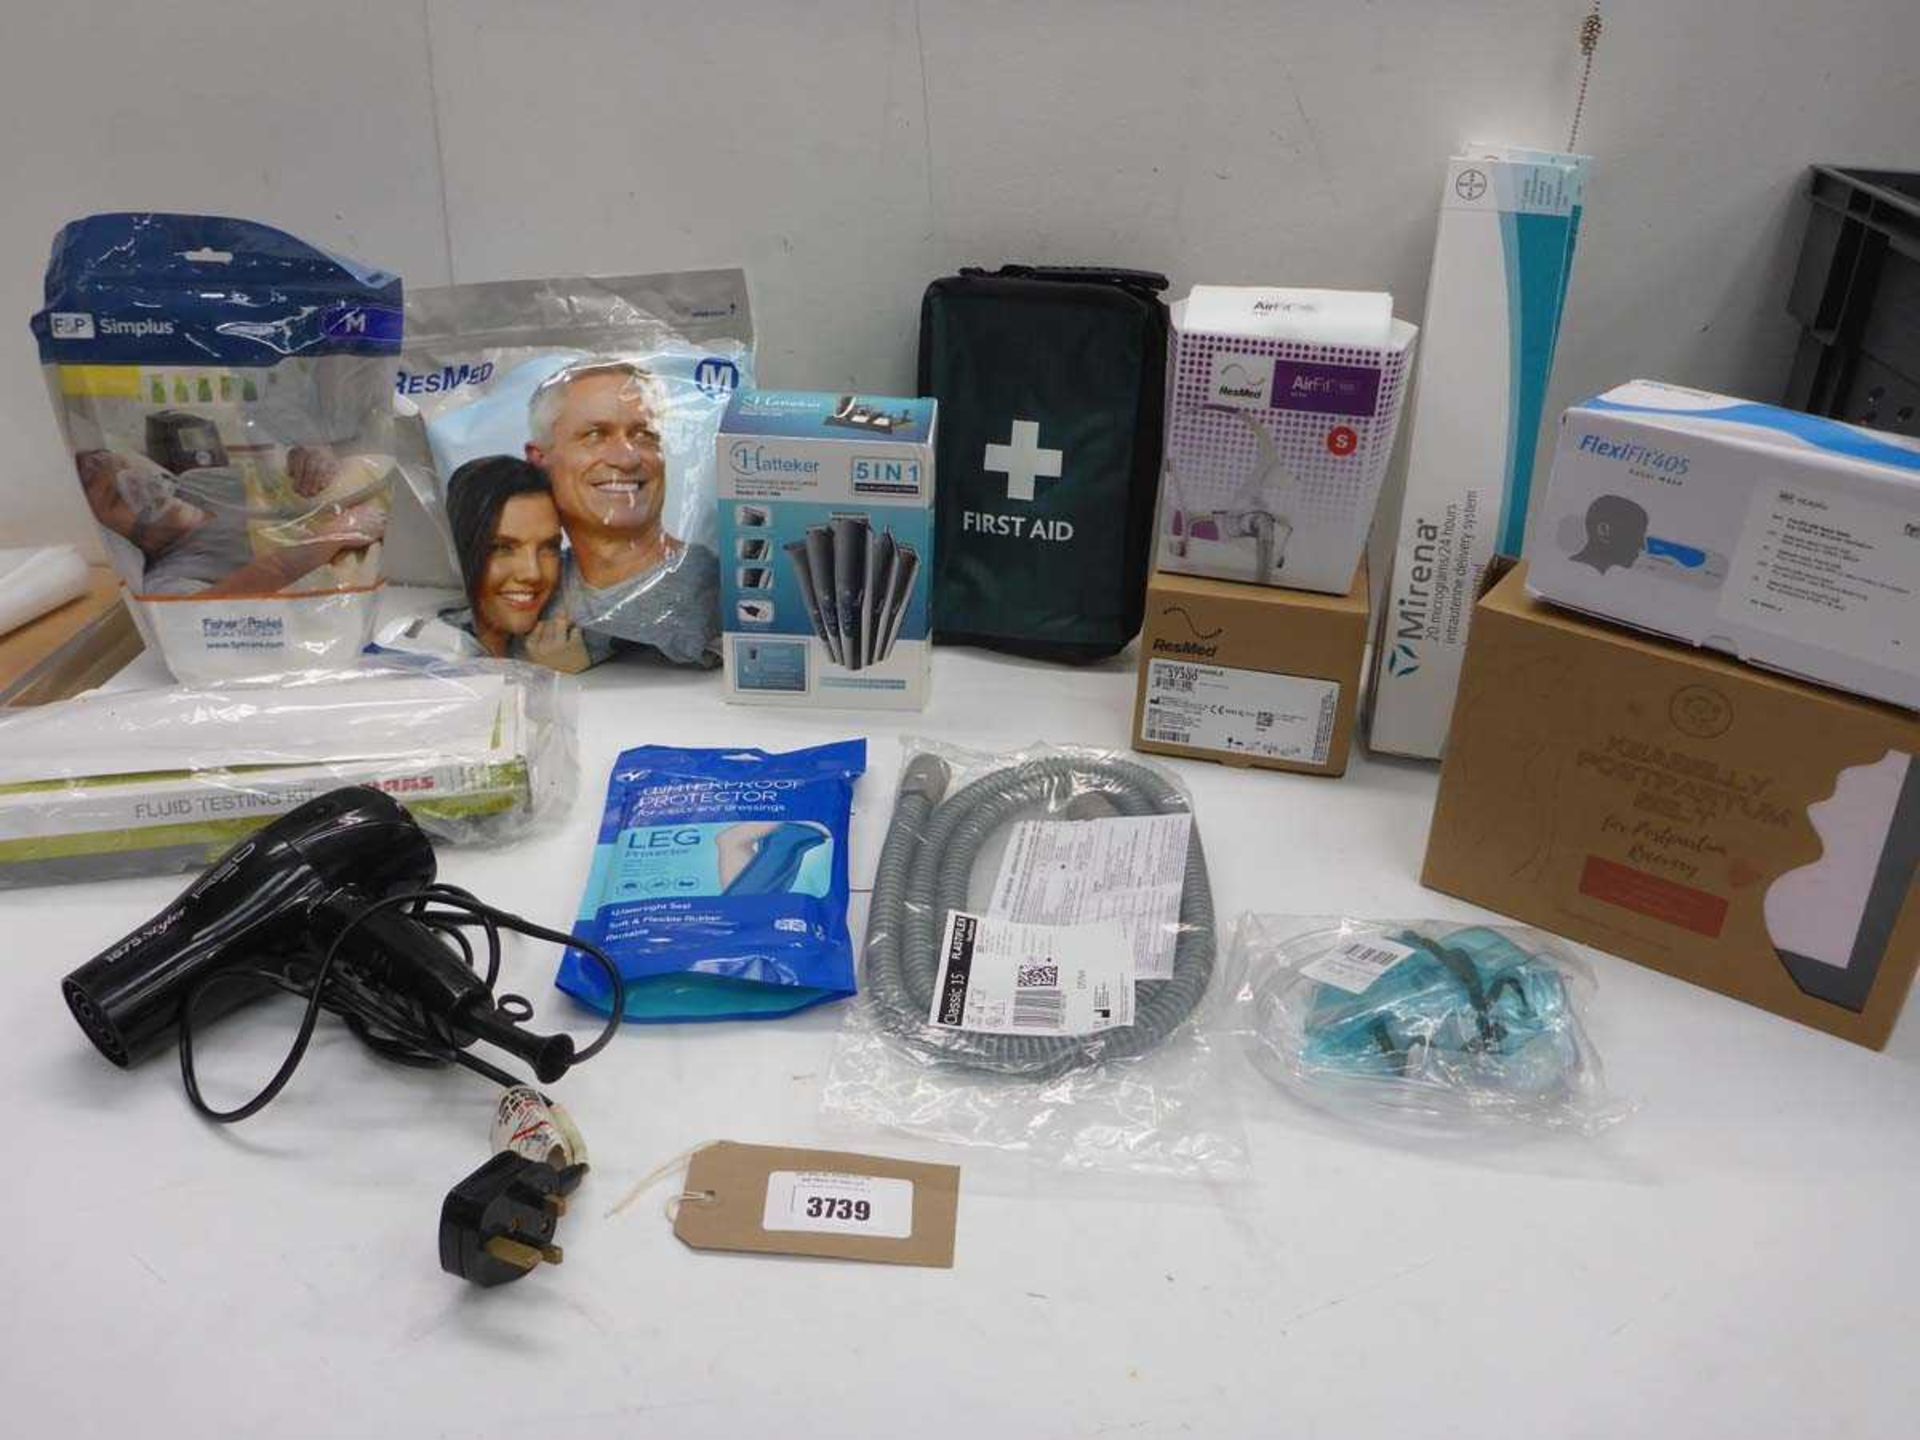 +VAT ResMed humidair unit, ResMed, F&P & flexiFit face masks, First aid kit, Fluid testing kit,